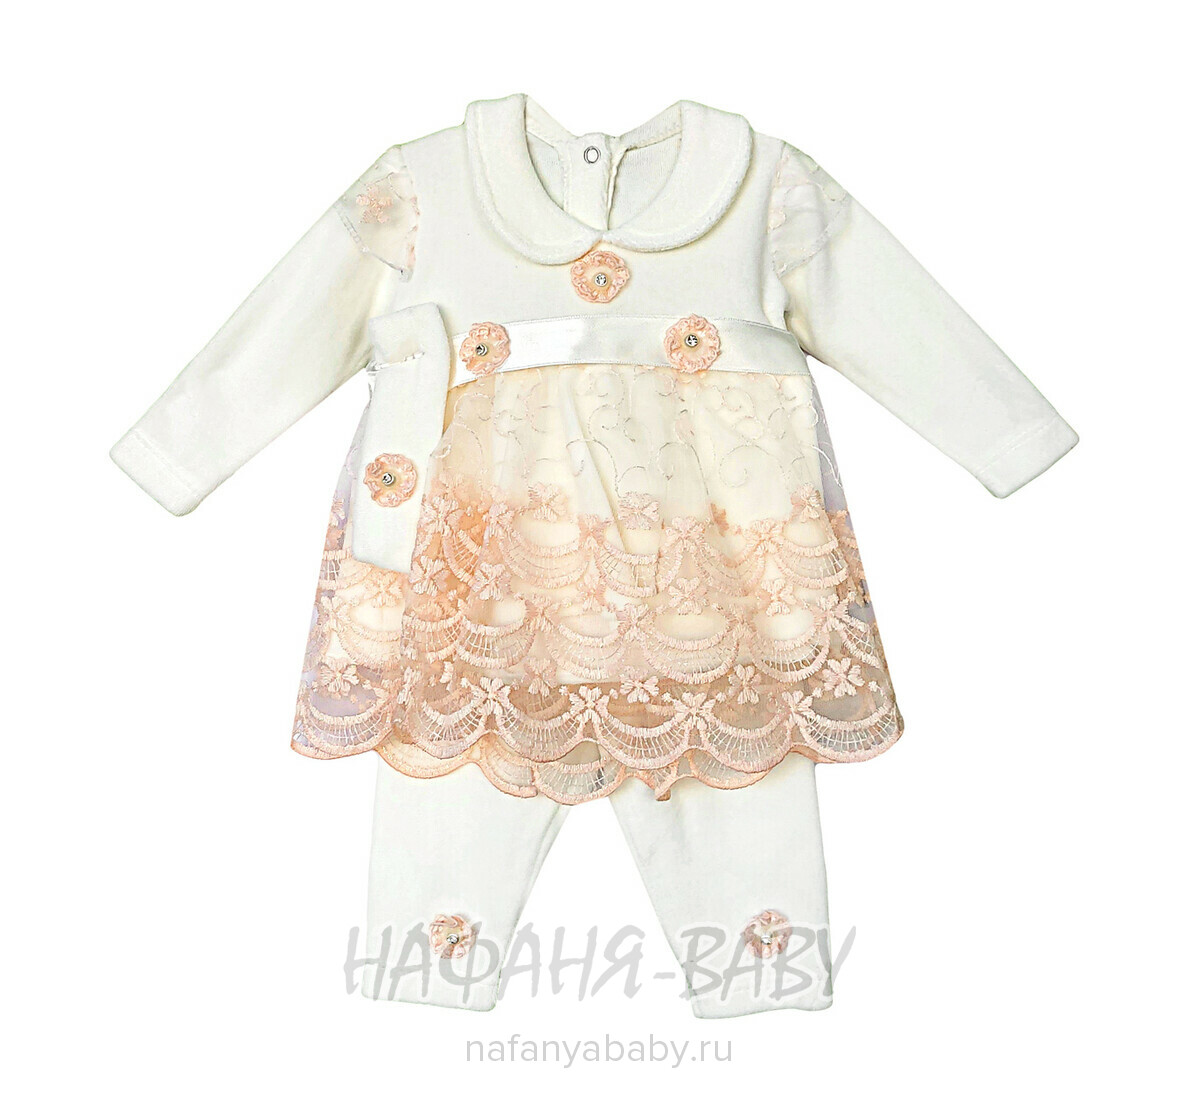 Детский костюм для новорожденных FINDIK, купить в интернет магазине Нафаня. арт: 69002, цвет молочный с персиковым